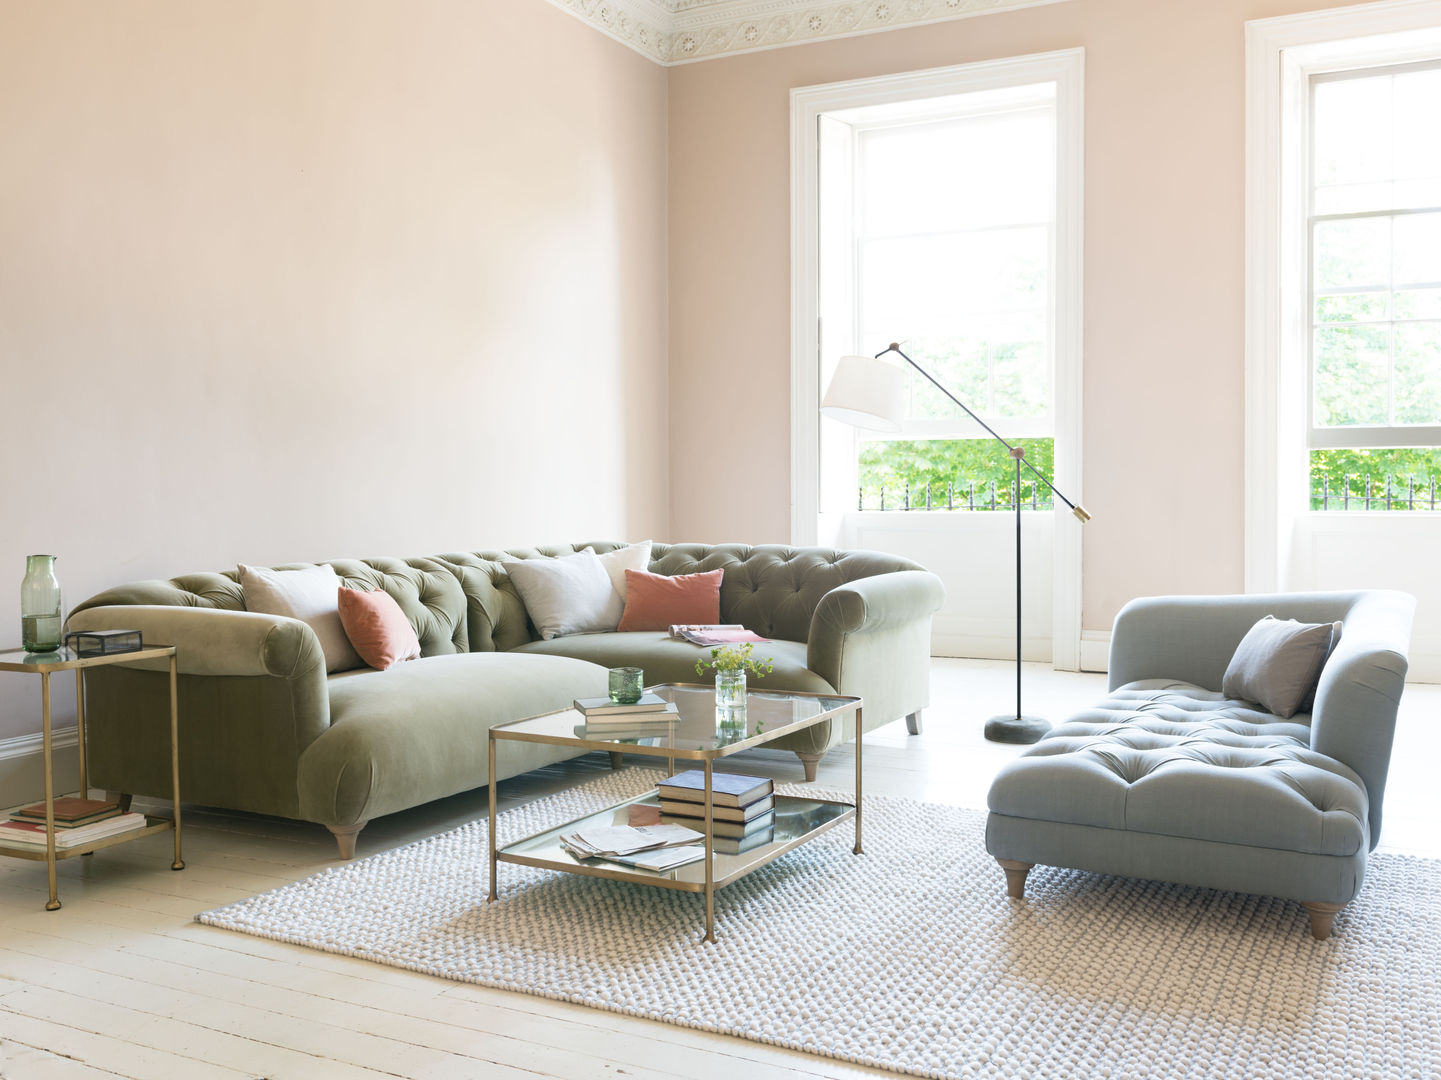 Dixie corner sofa Loaf モダンデザインの リビング living room,olive,sofa,velvet,chesterfield,button-back,brass,glass